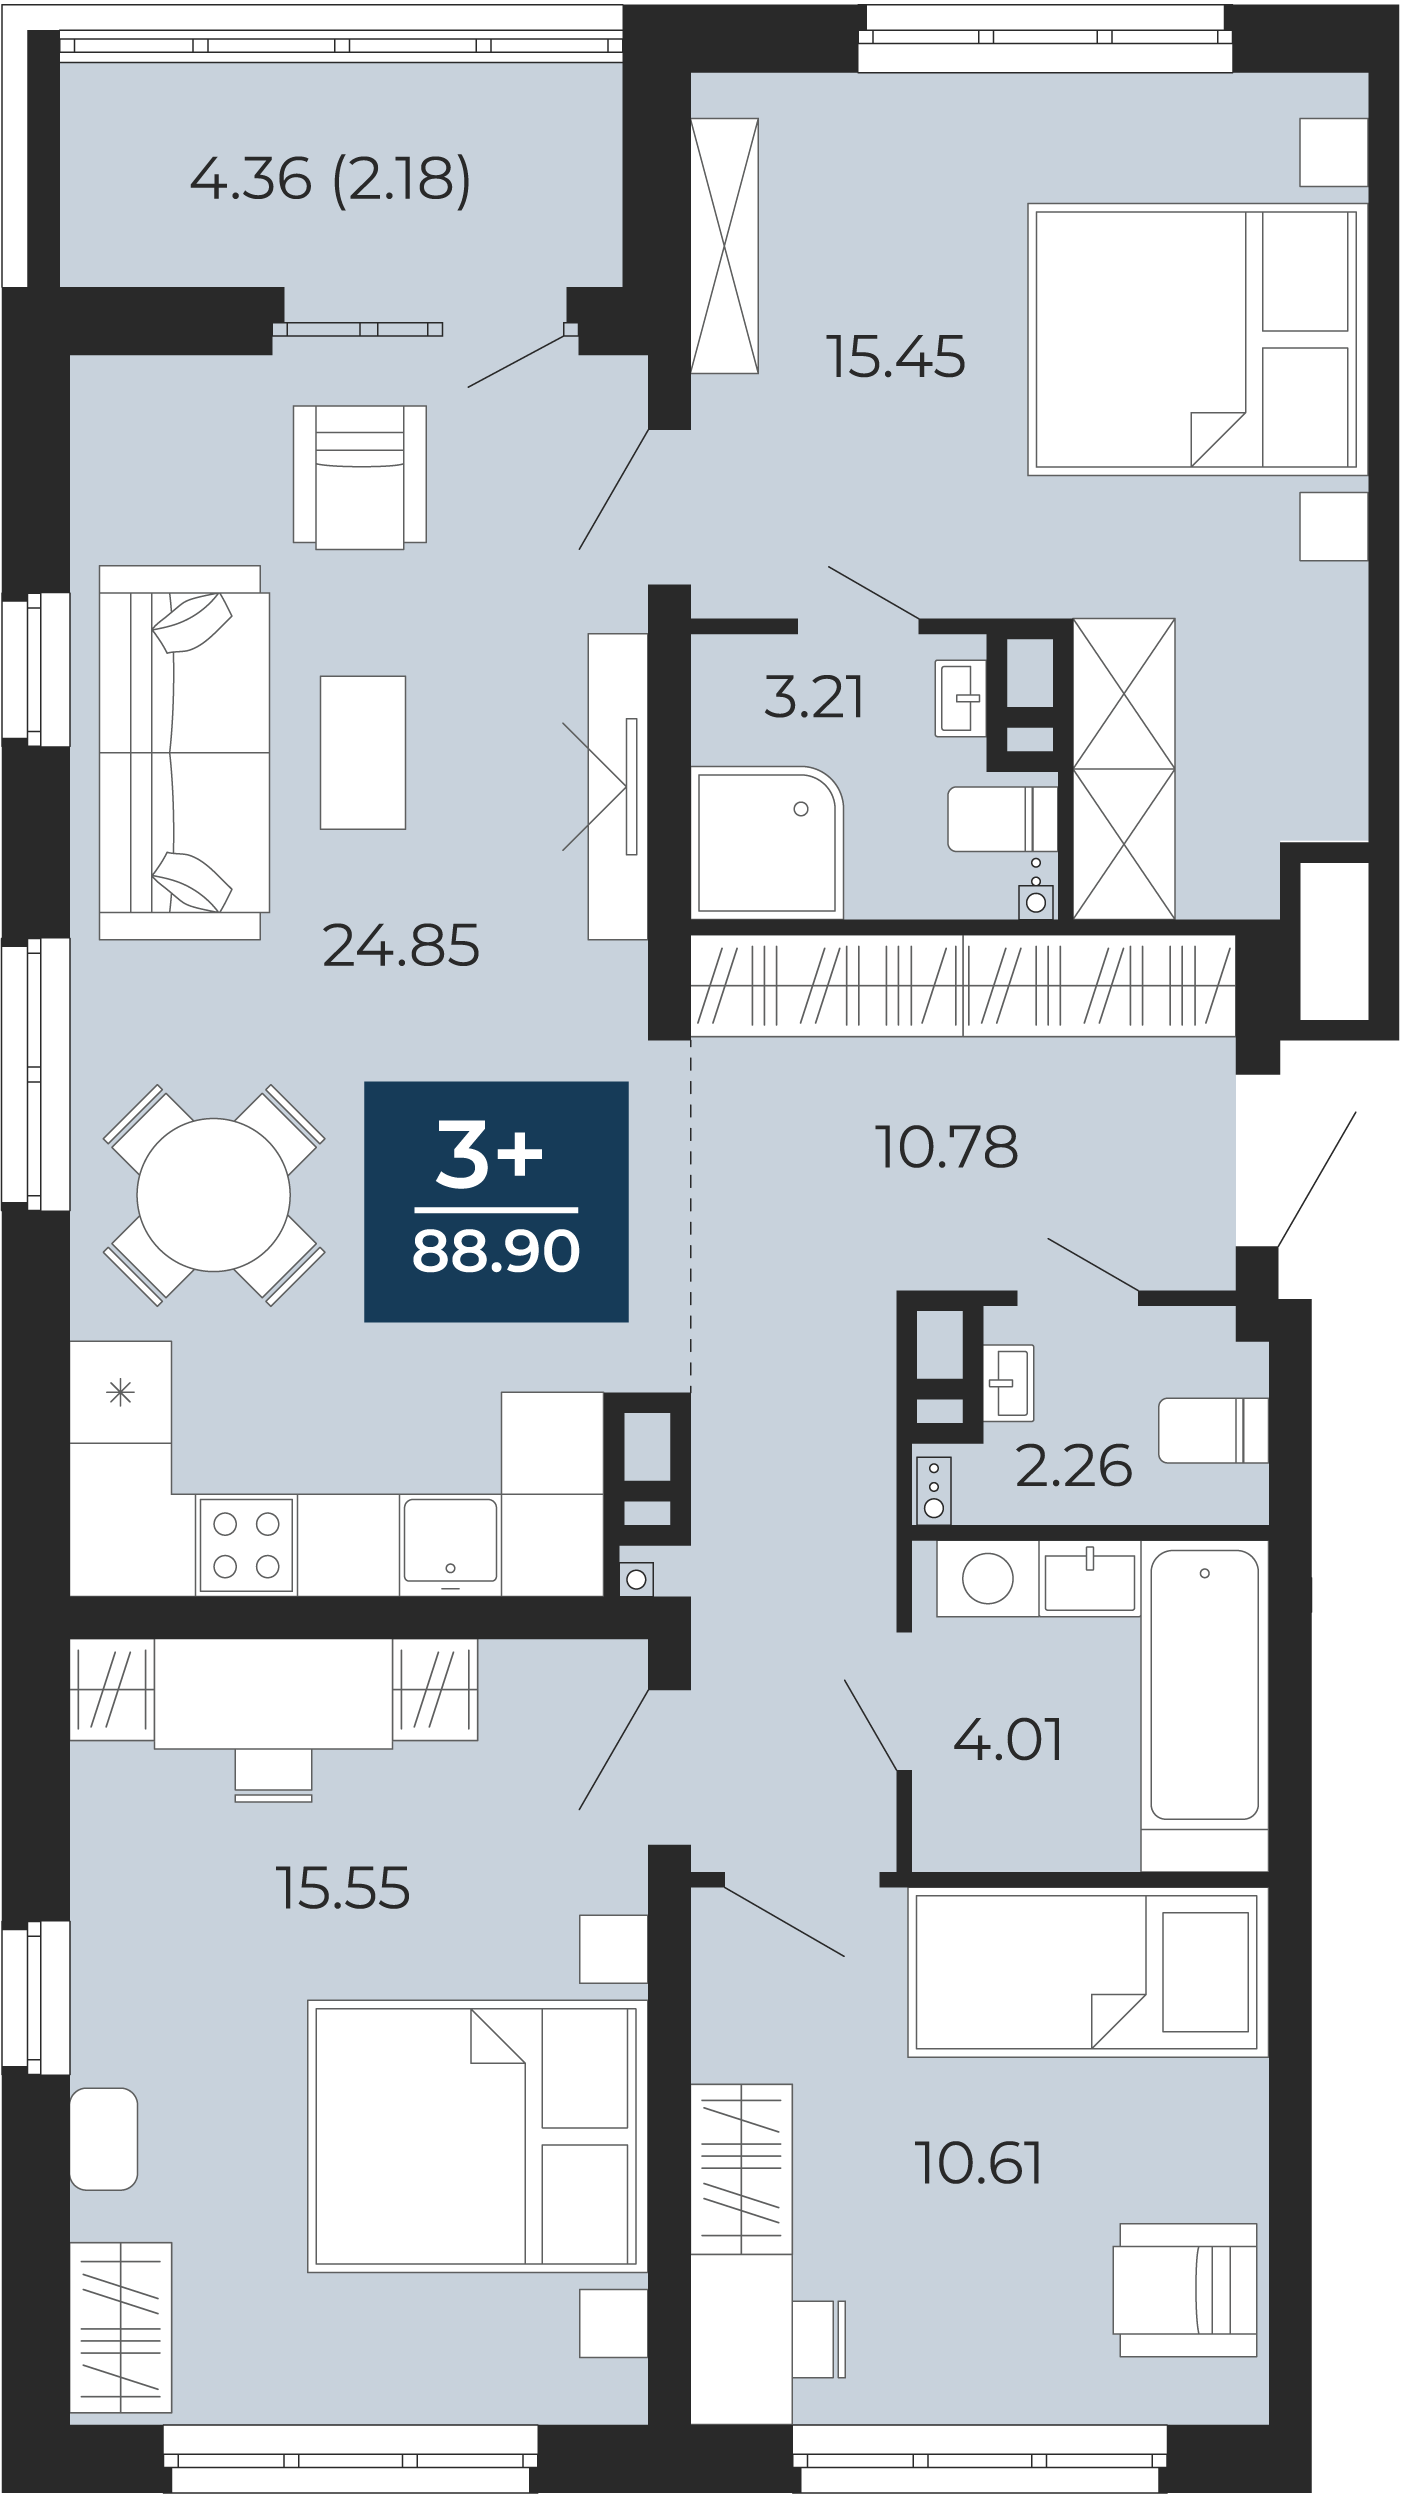 Квартира № 18, 3-комнатная, 88.9 кв. м, 4 этаж